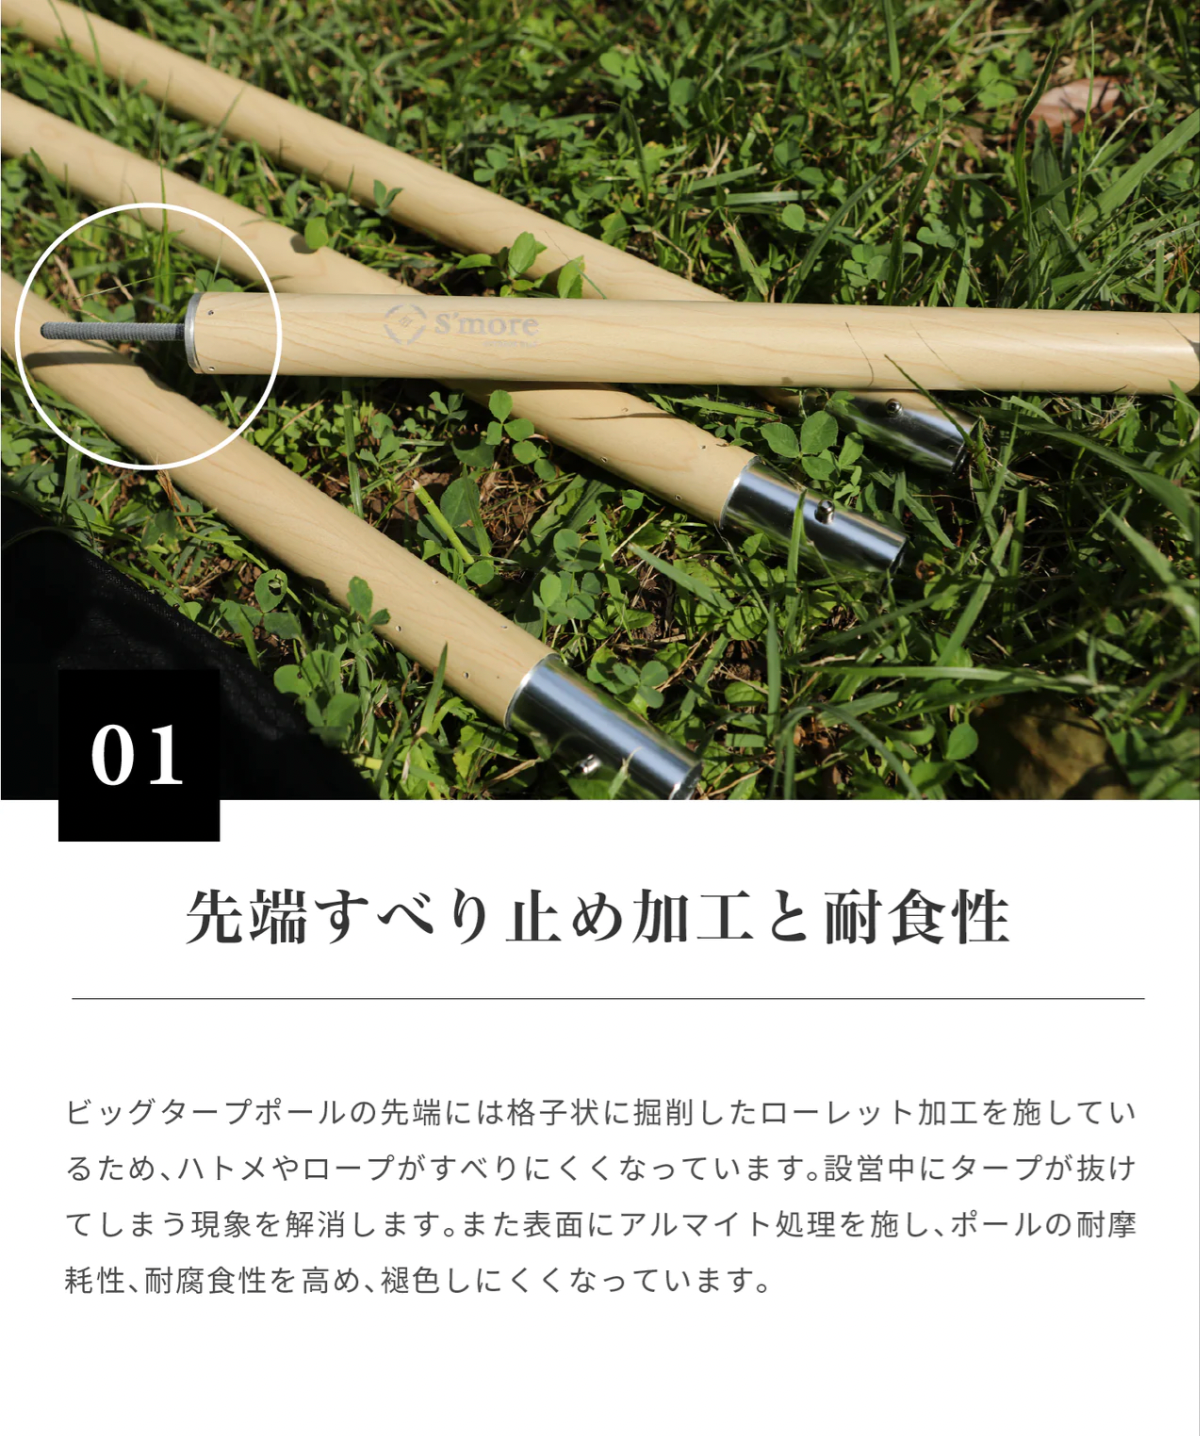 【預購】Alumi pole 2.4 woodi 鋁製營柱(木紋色)